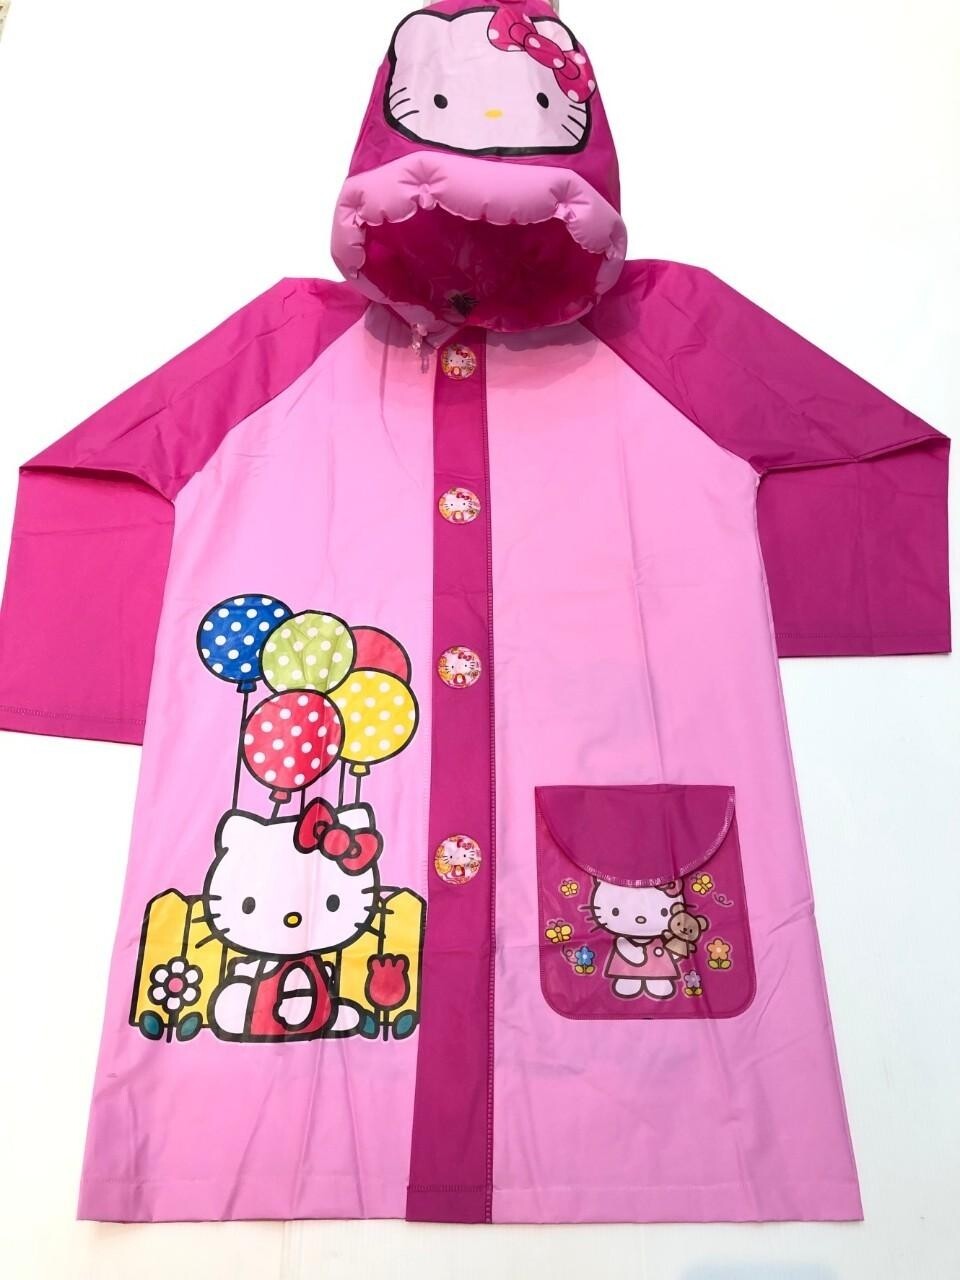 เสื้อกันฝนเด็ก ชุดกันฝนเด็กรุ่นไม่ขยายหลัง เสื้อกันฝน ชุดกันน้ำ ลายการ์ตูน น่ารัก (ขนาด 100-130 CM)